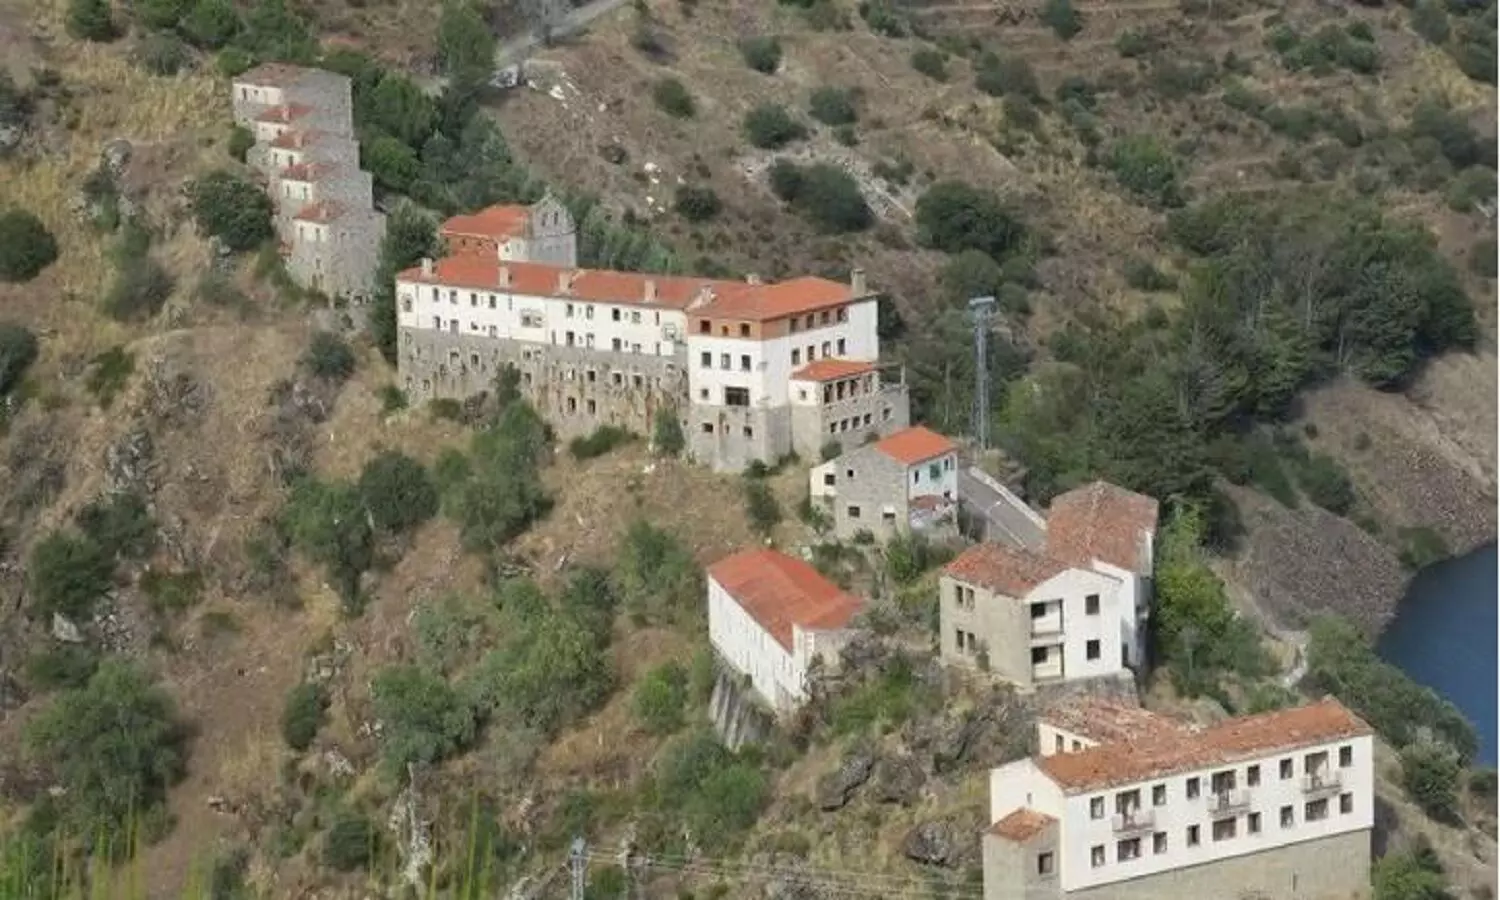 Buy Property In Spain: स्पेन में पूरा गांव बिक रहा है, कीमत सिर्फ 2 करोड़ रुपए